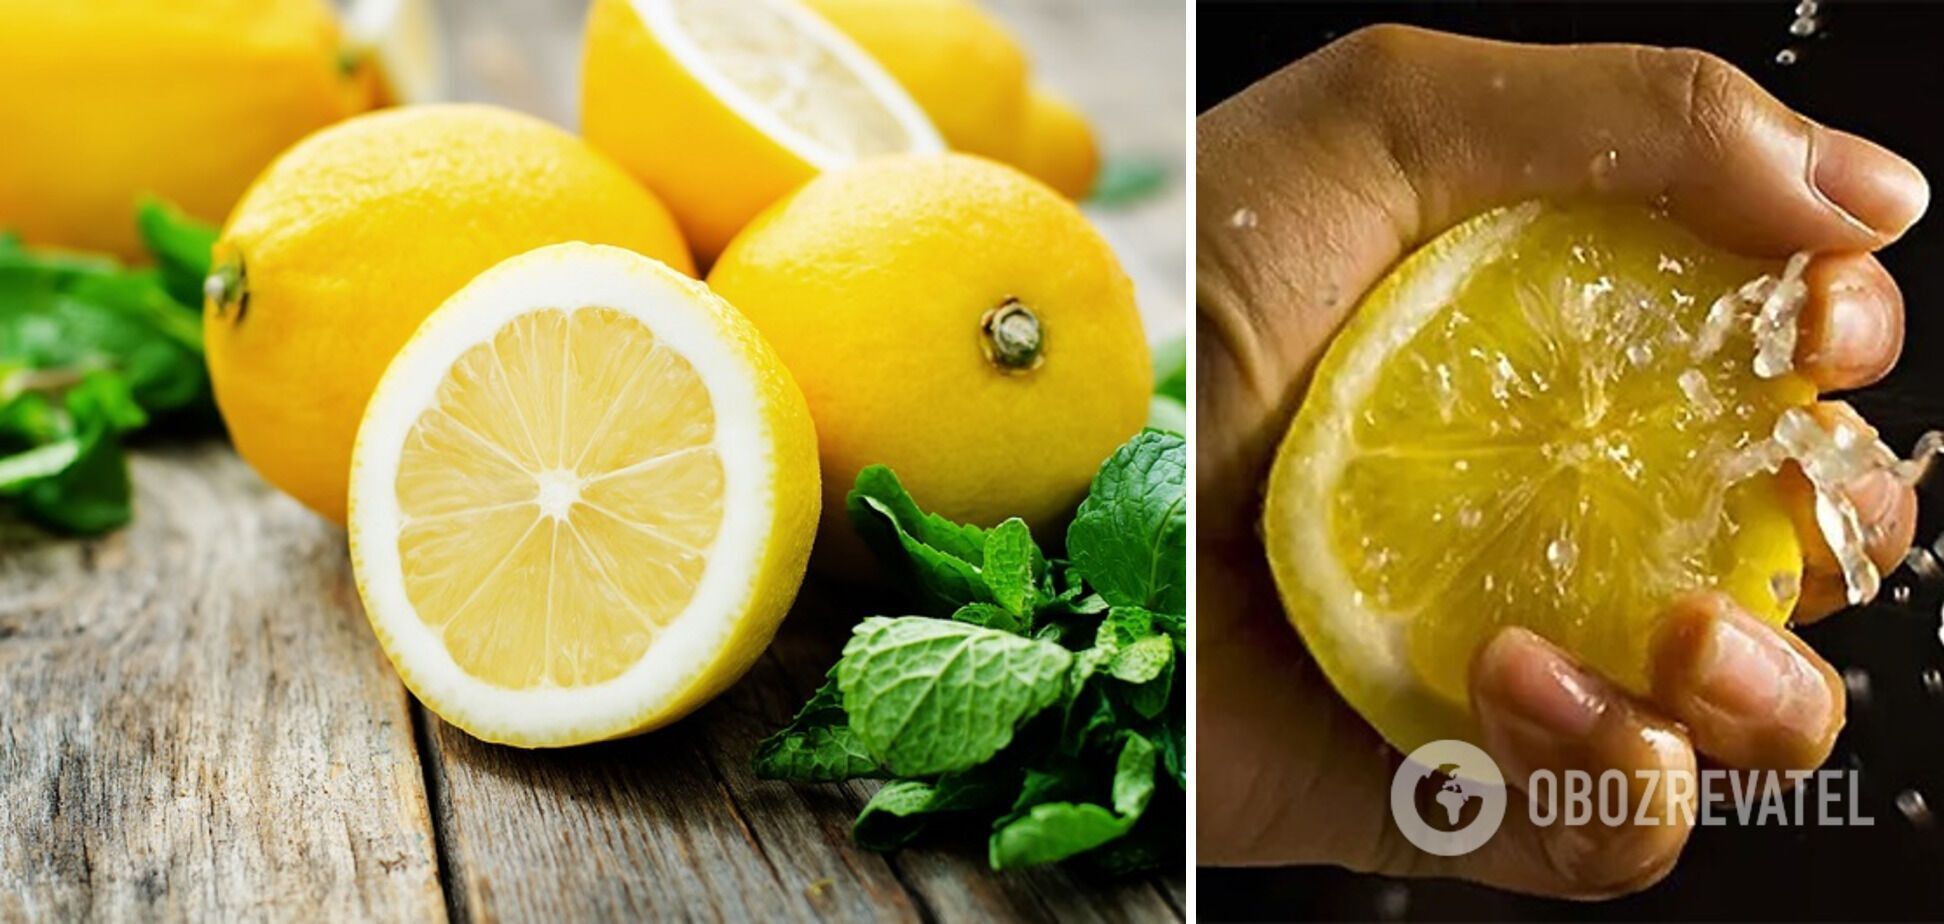 Lemon for making marinade